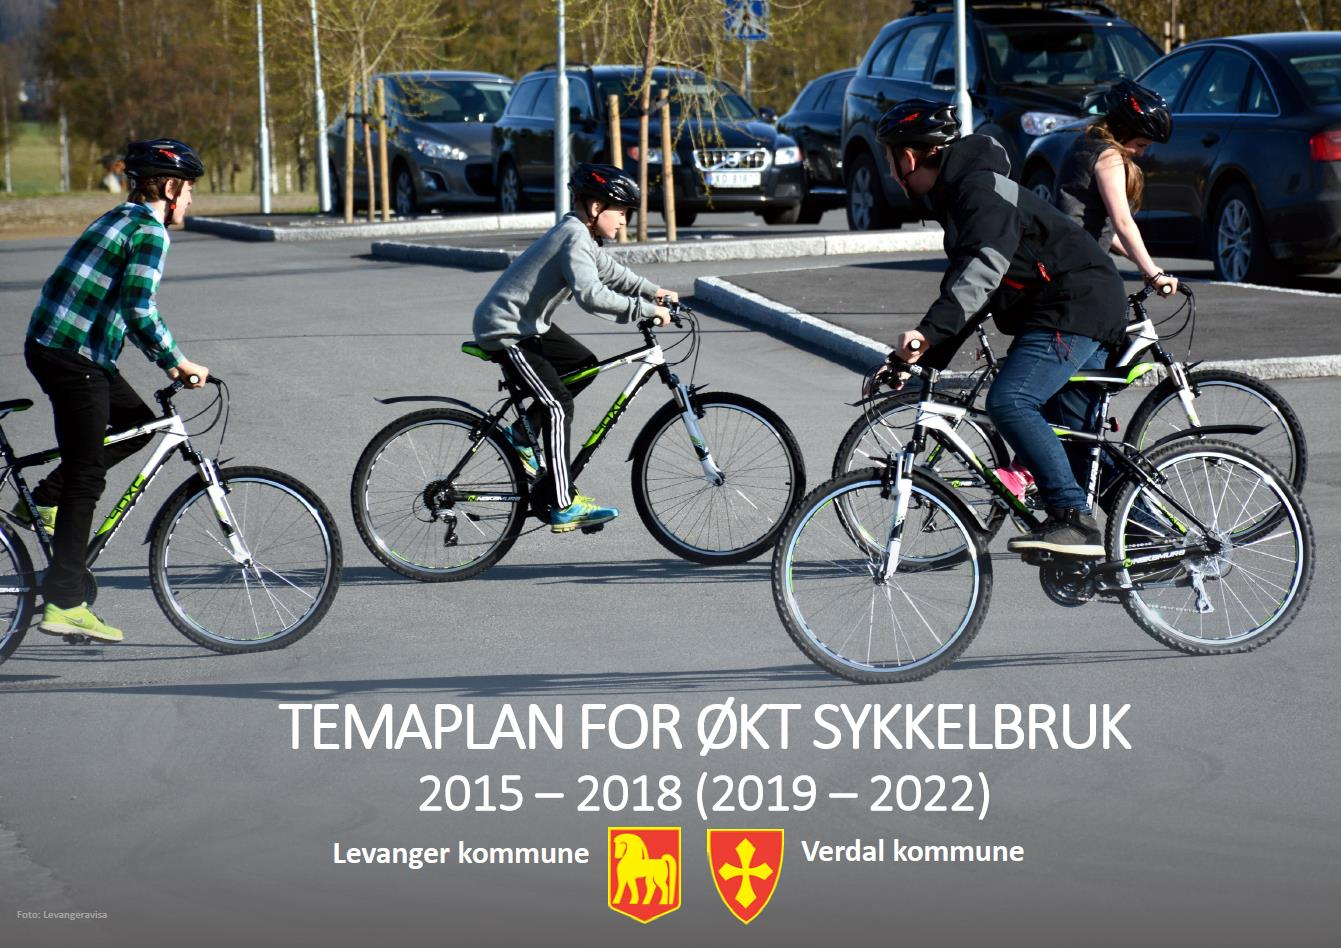 Temaplan for økt sykkelbruk (2015 2018) Levanger og Verdal kommune 